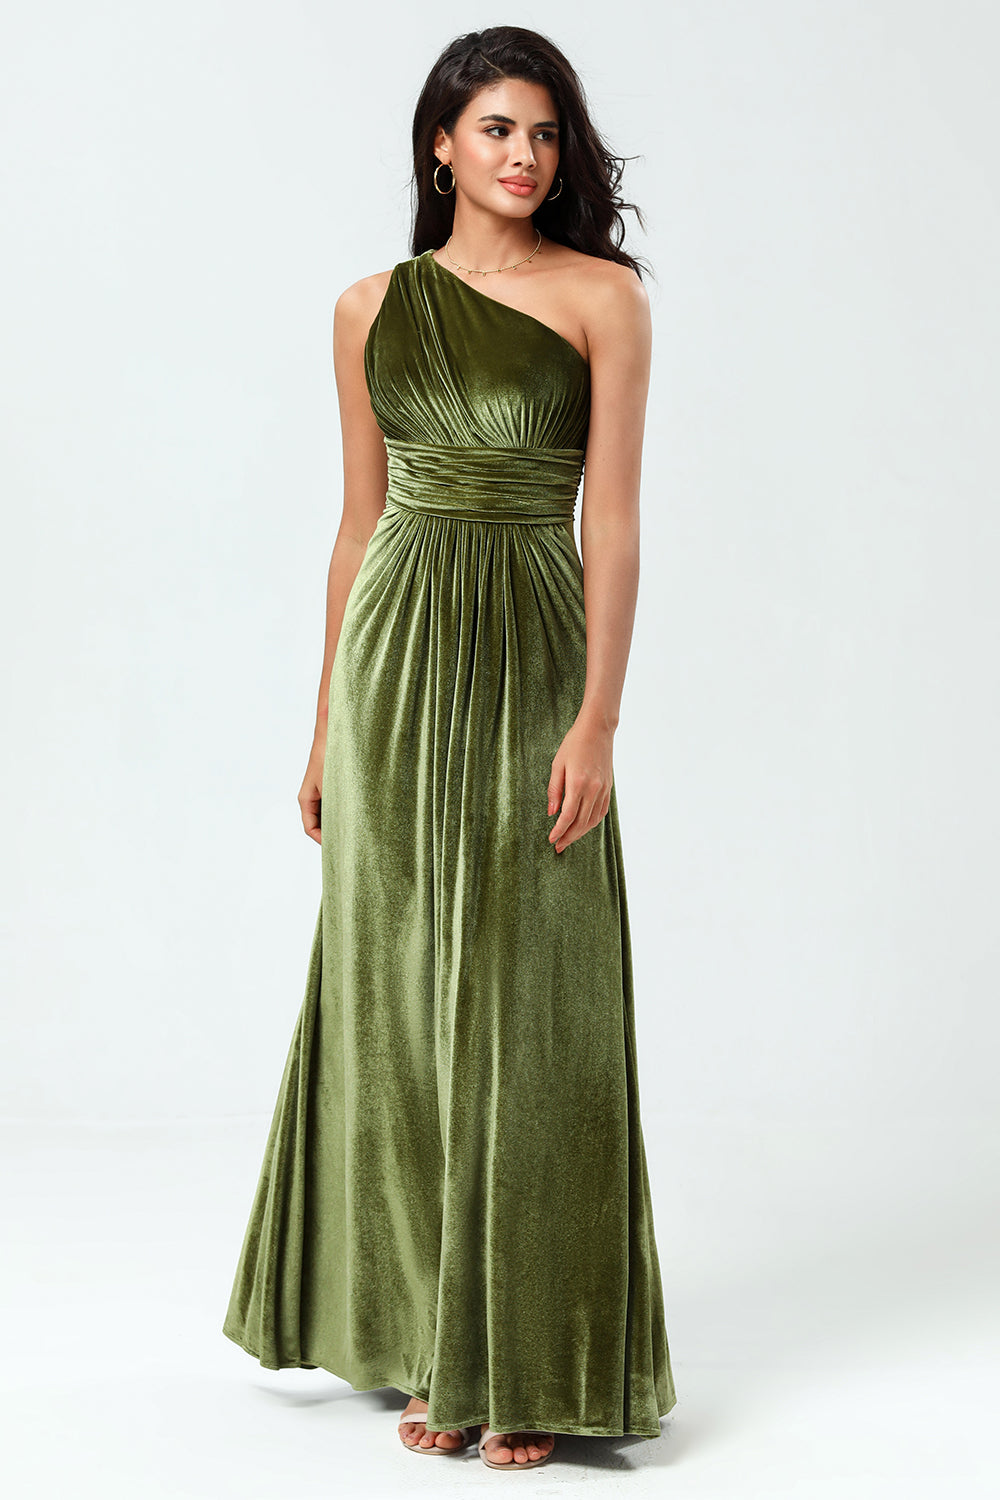 Velvet One Shoulder Olive Bridesmaid Dress